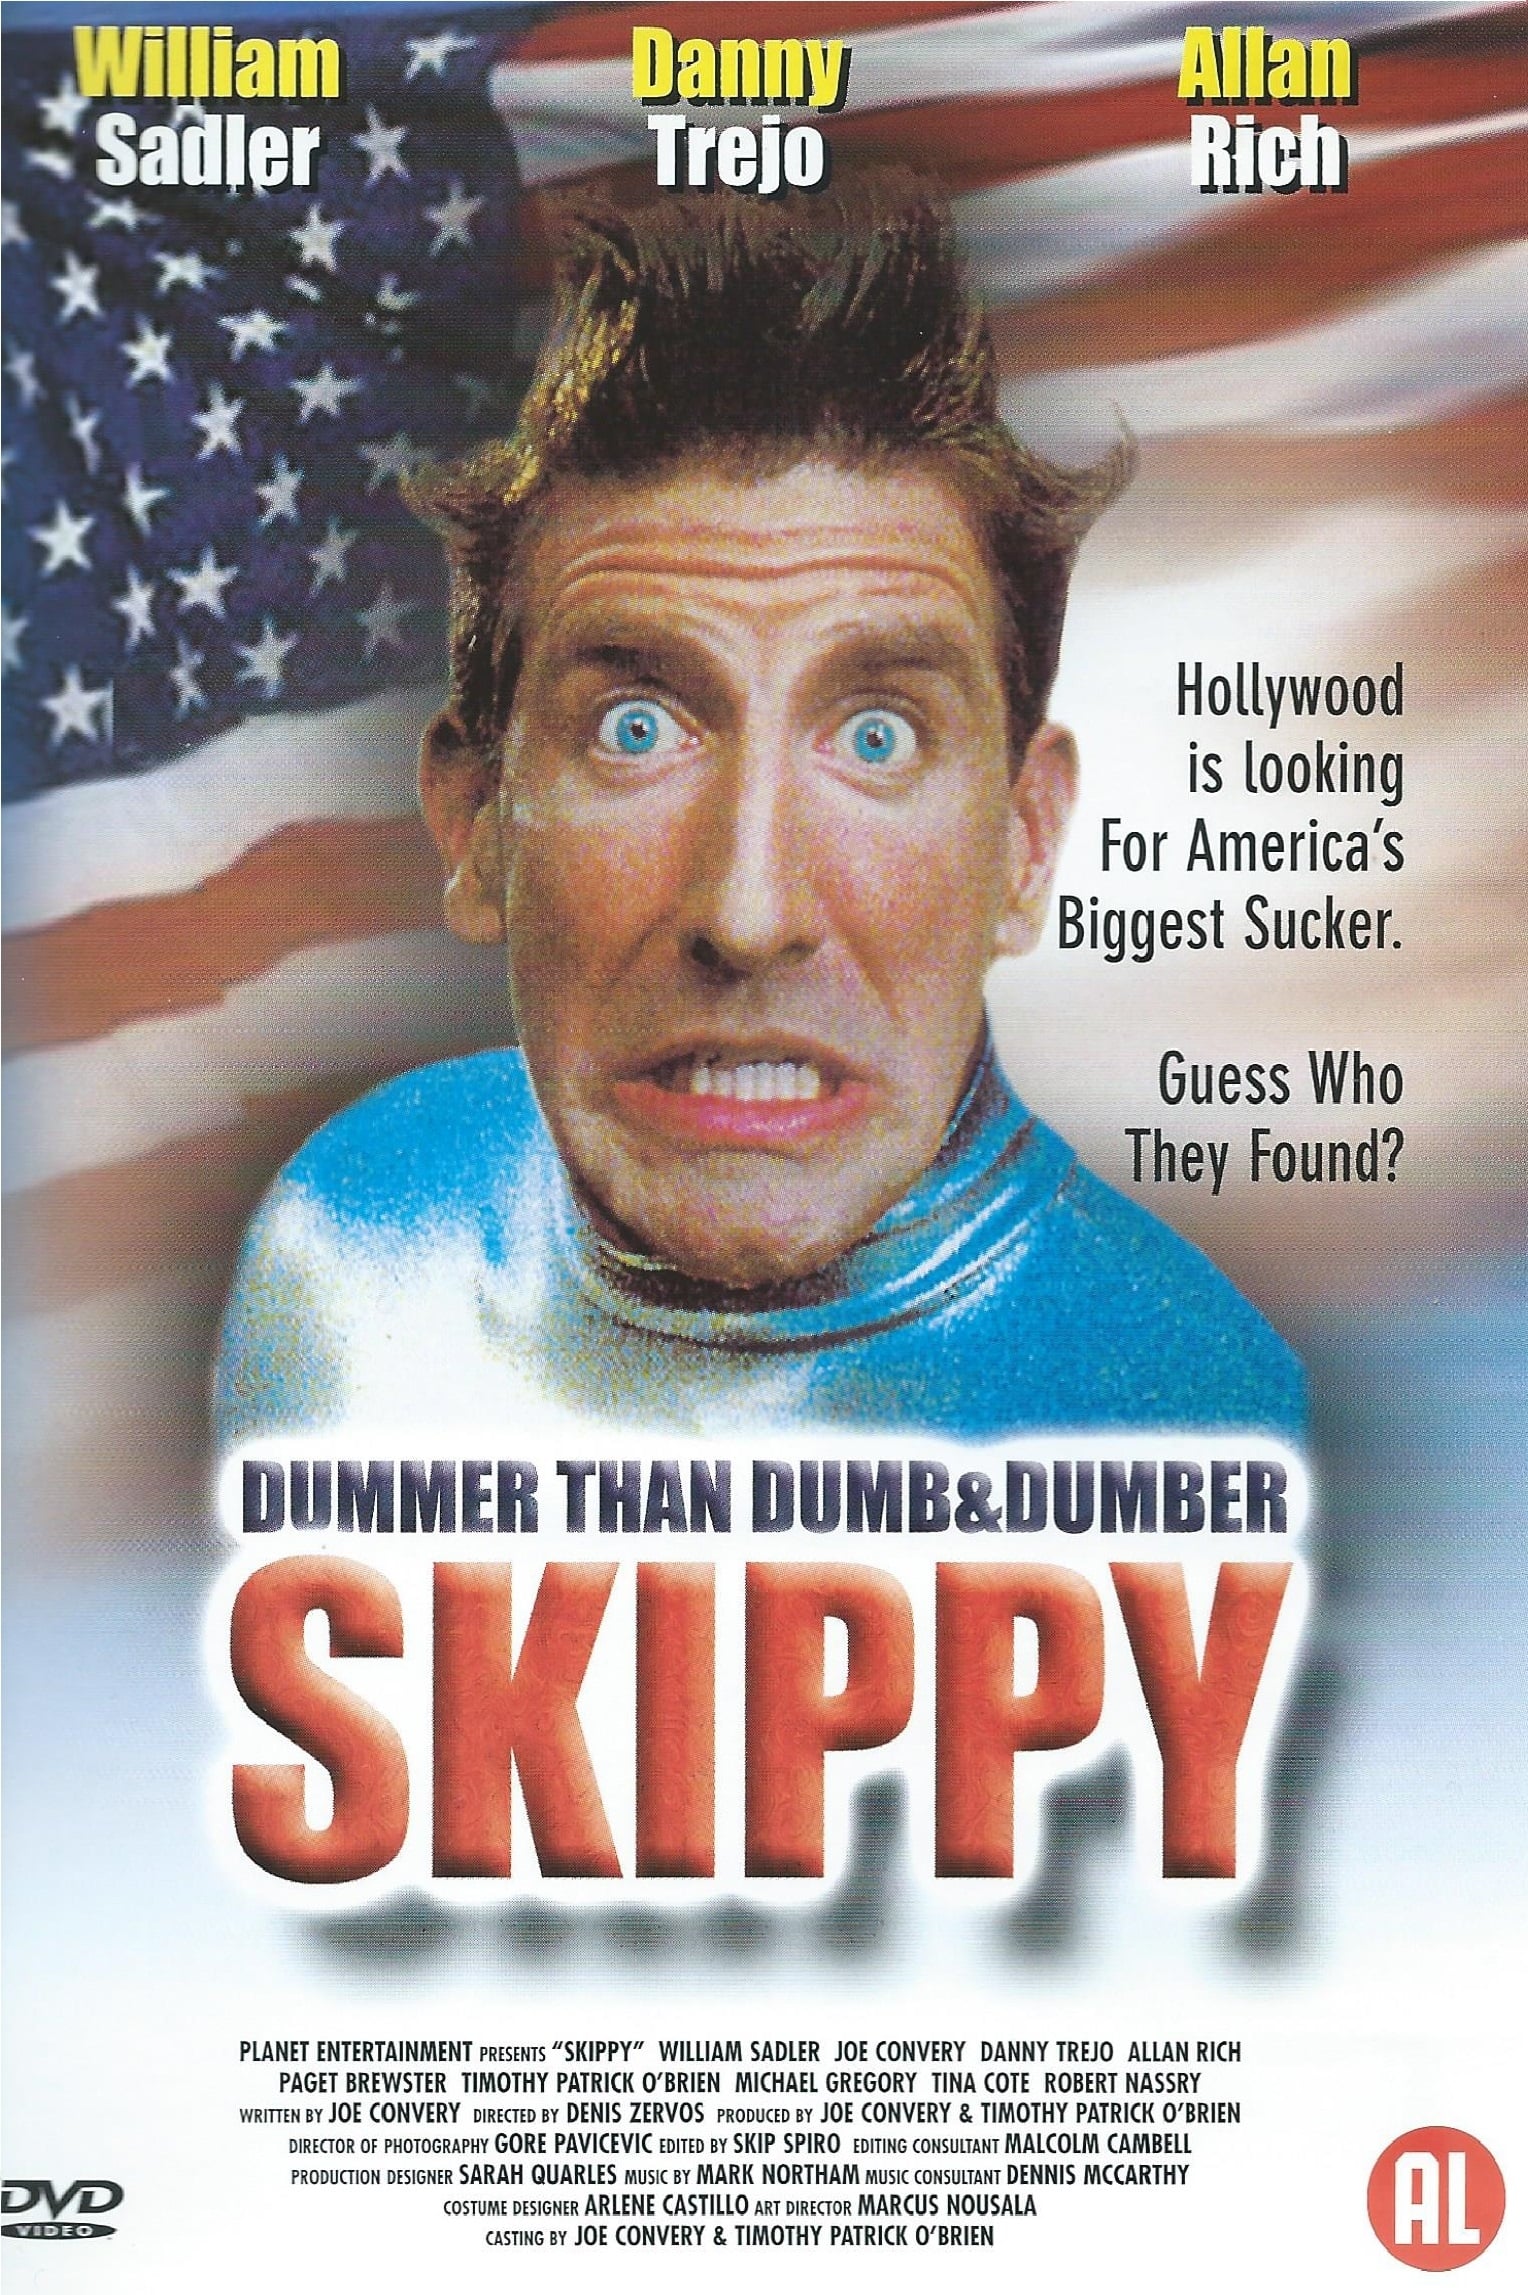 Plakat von "Skippy - Dummer than Dumb & Dumber"